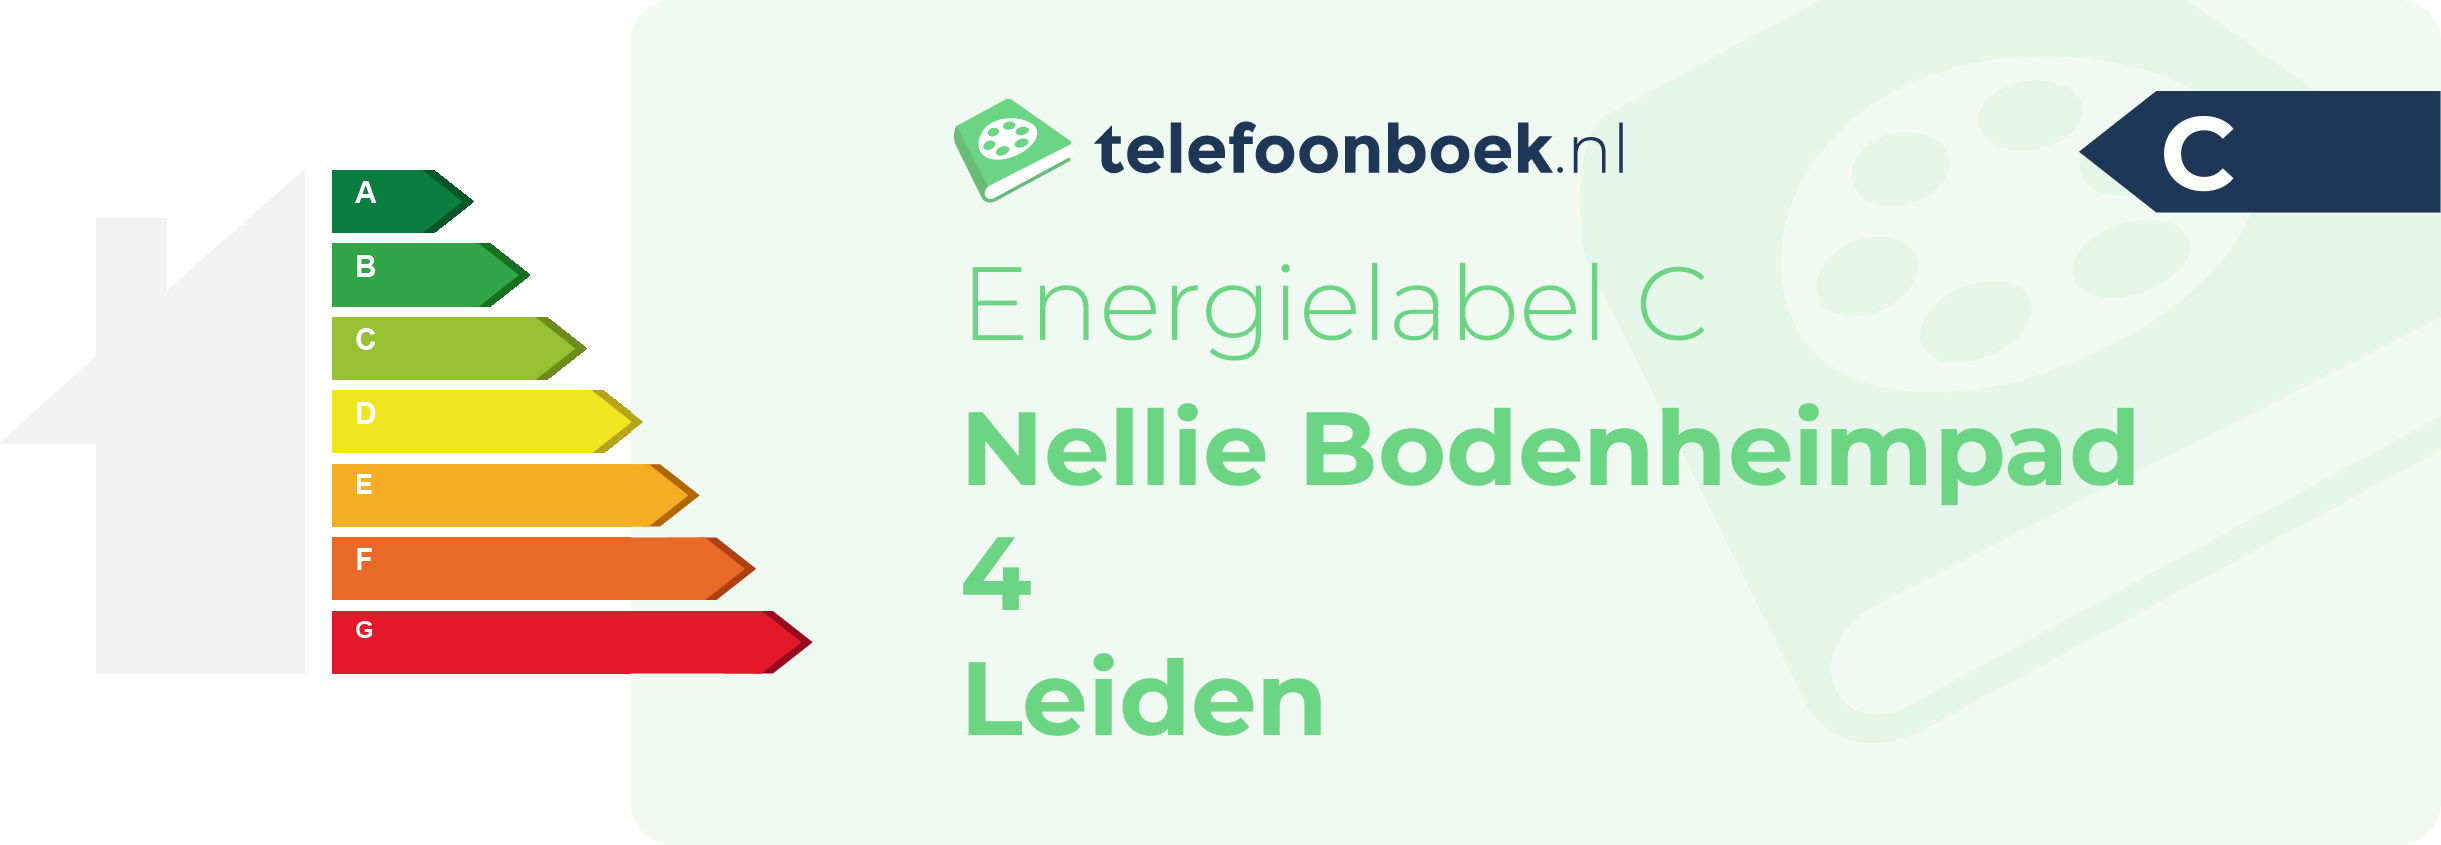 Energielabel Nellie Bodenheimpad 4 Leiden